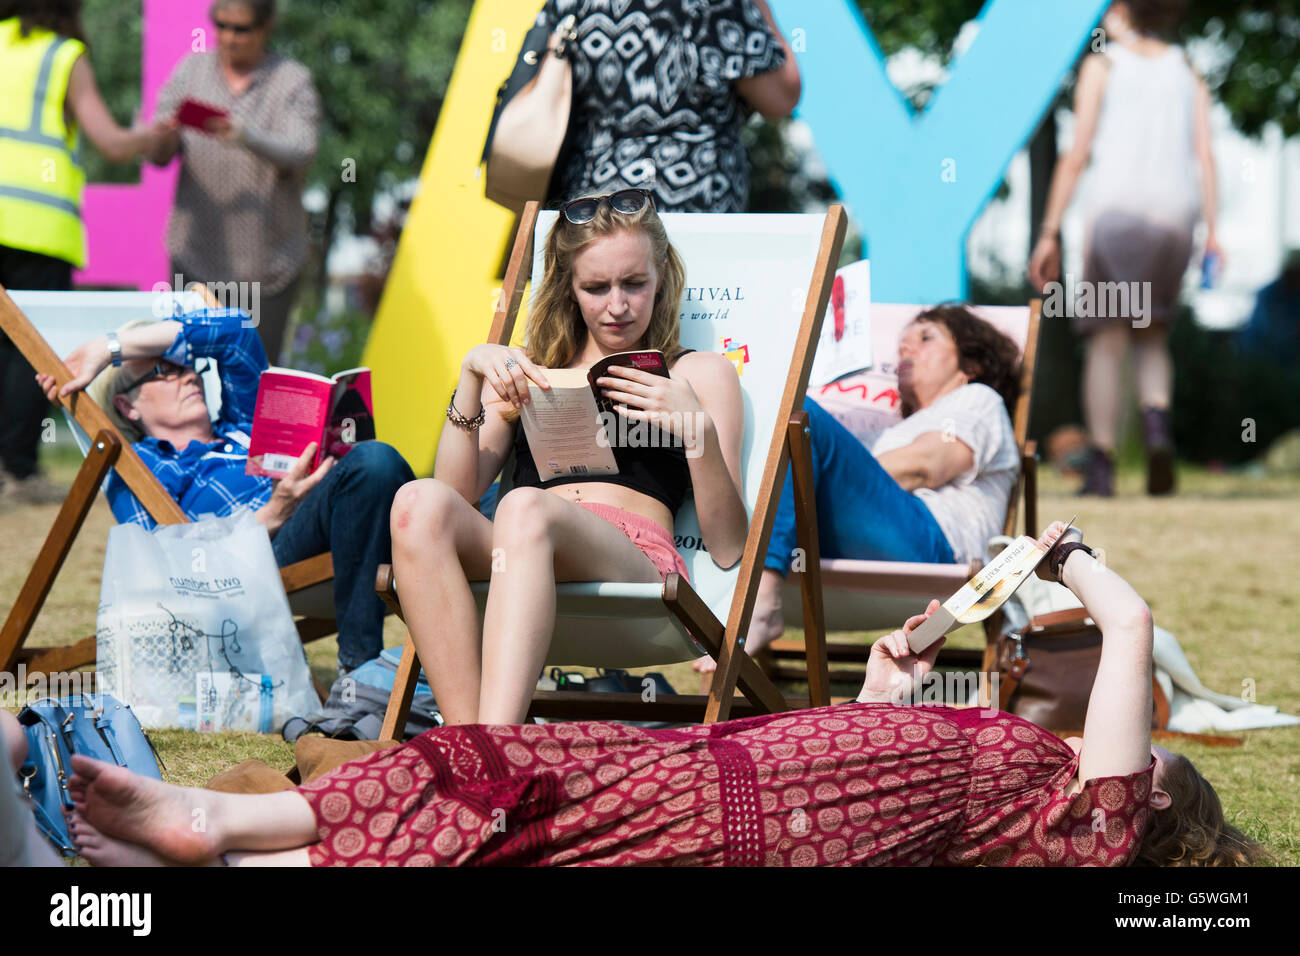 Le persone che si godono il caldo sole estivo presso la Hay Festival della letteratura e delle arti, Hay on Wye, Powys, Wales UK, domenica 05 giugno 2016 Foto Stock